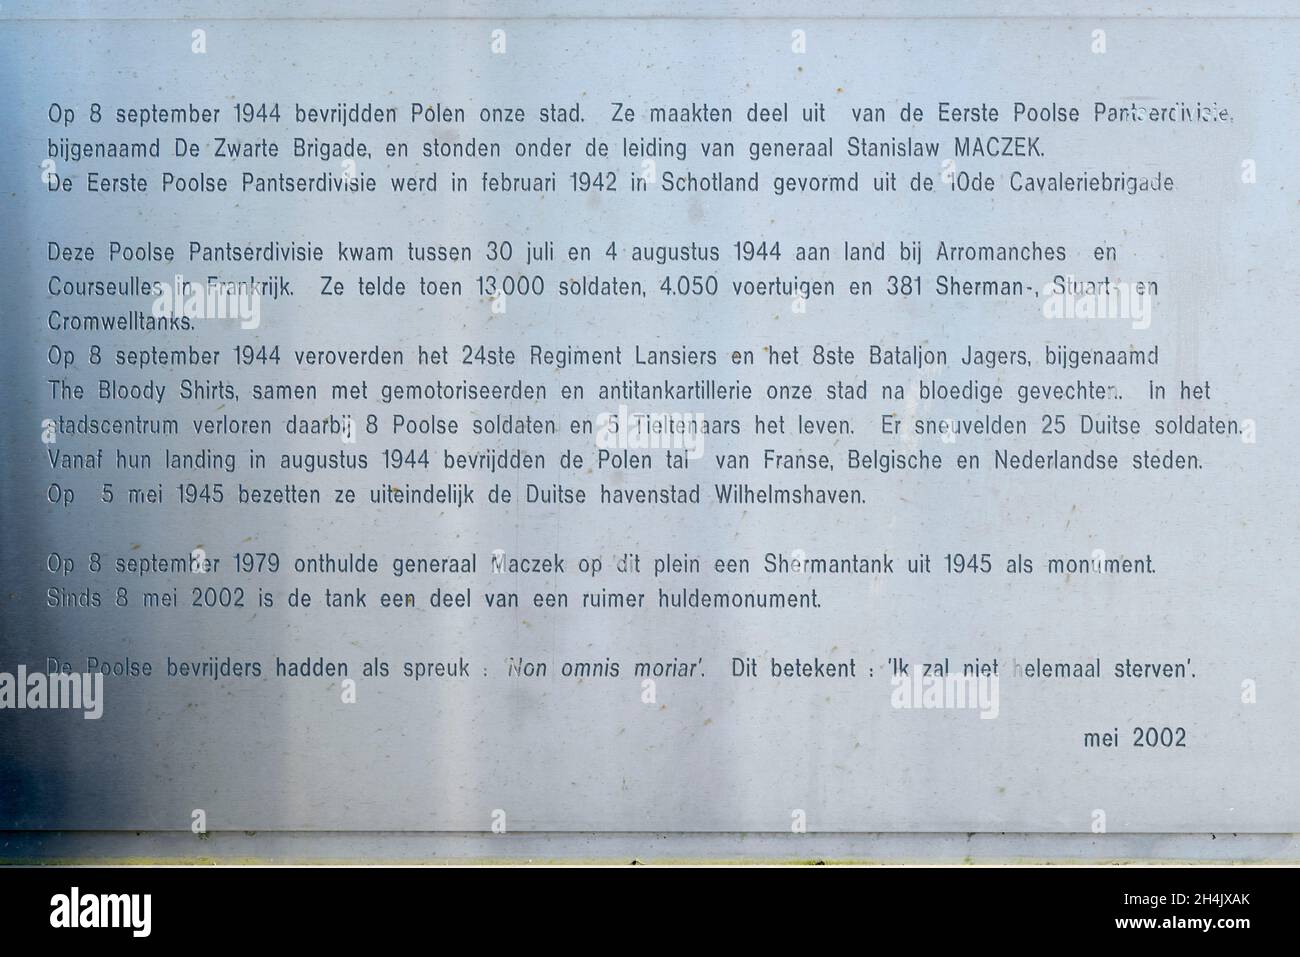 Bélgica, Flandes Occidental, Thielt o Tielt, memorial de la liberación de la ciudad de Tielt por el general polaco Maczek y el ejército polaco en septiembre de 1944, tanque Sherman Firefly del ejército polaco, placa conmemorativa de la división blindada polaca de 1st del general Maczek Foto de stock